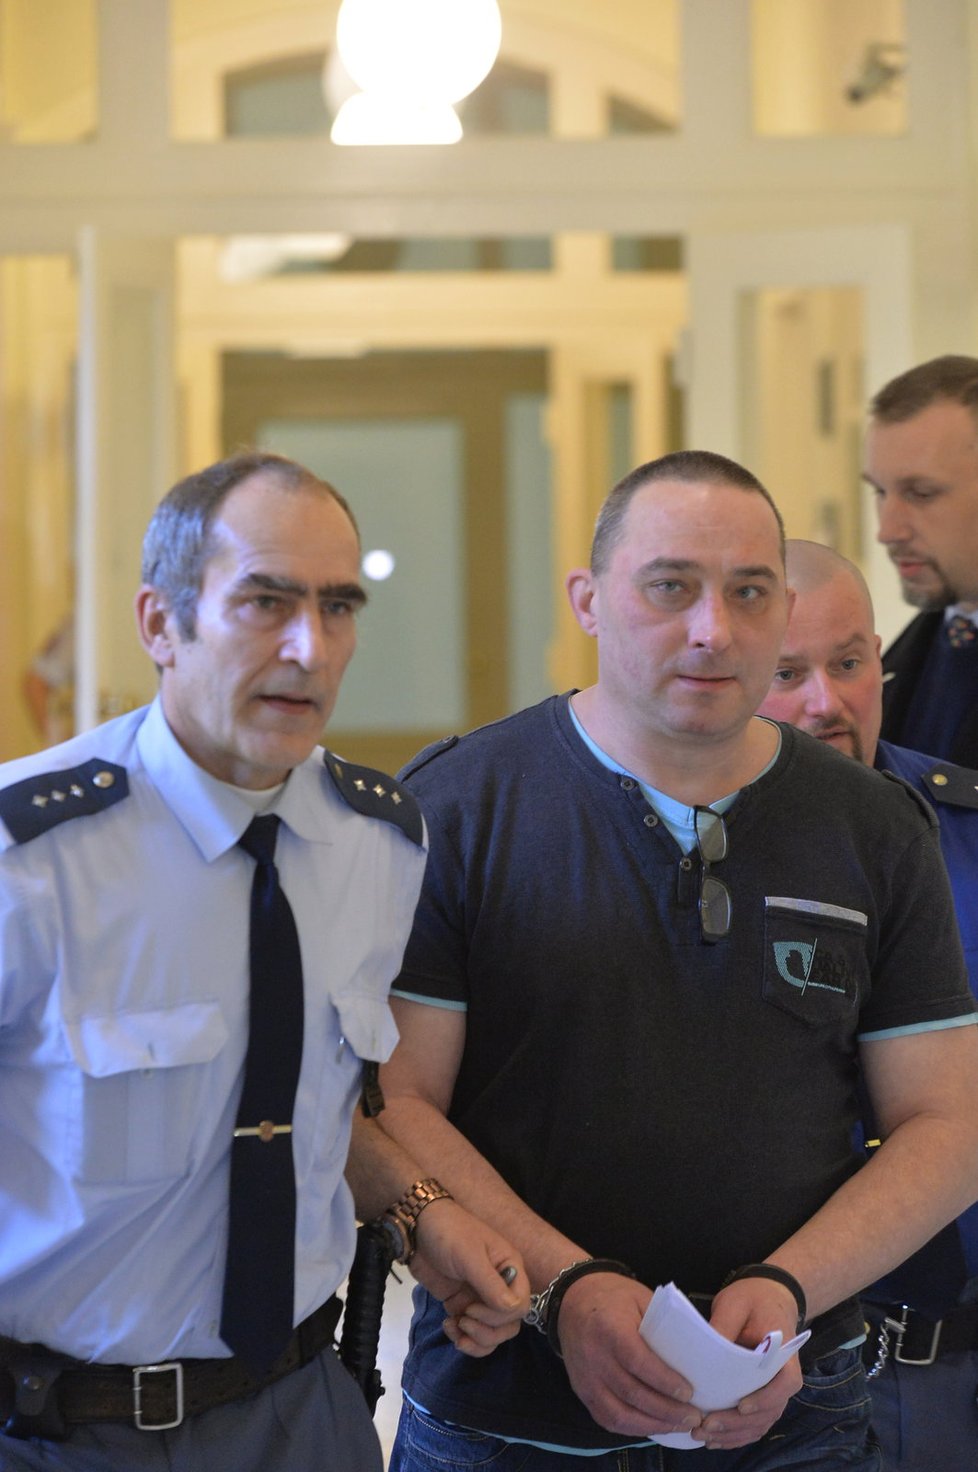 Za zardoušení partnerky v bytě v pražských Vysočanech si Libor Lébl odpyká 14,5 roku vězení.